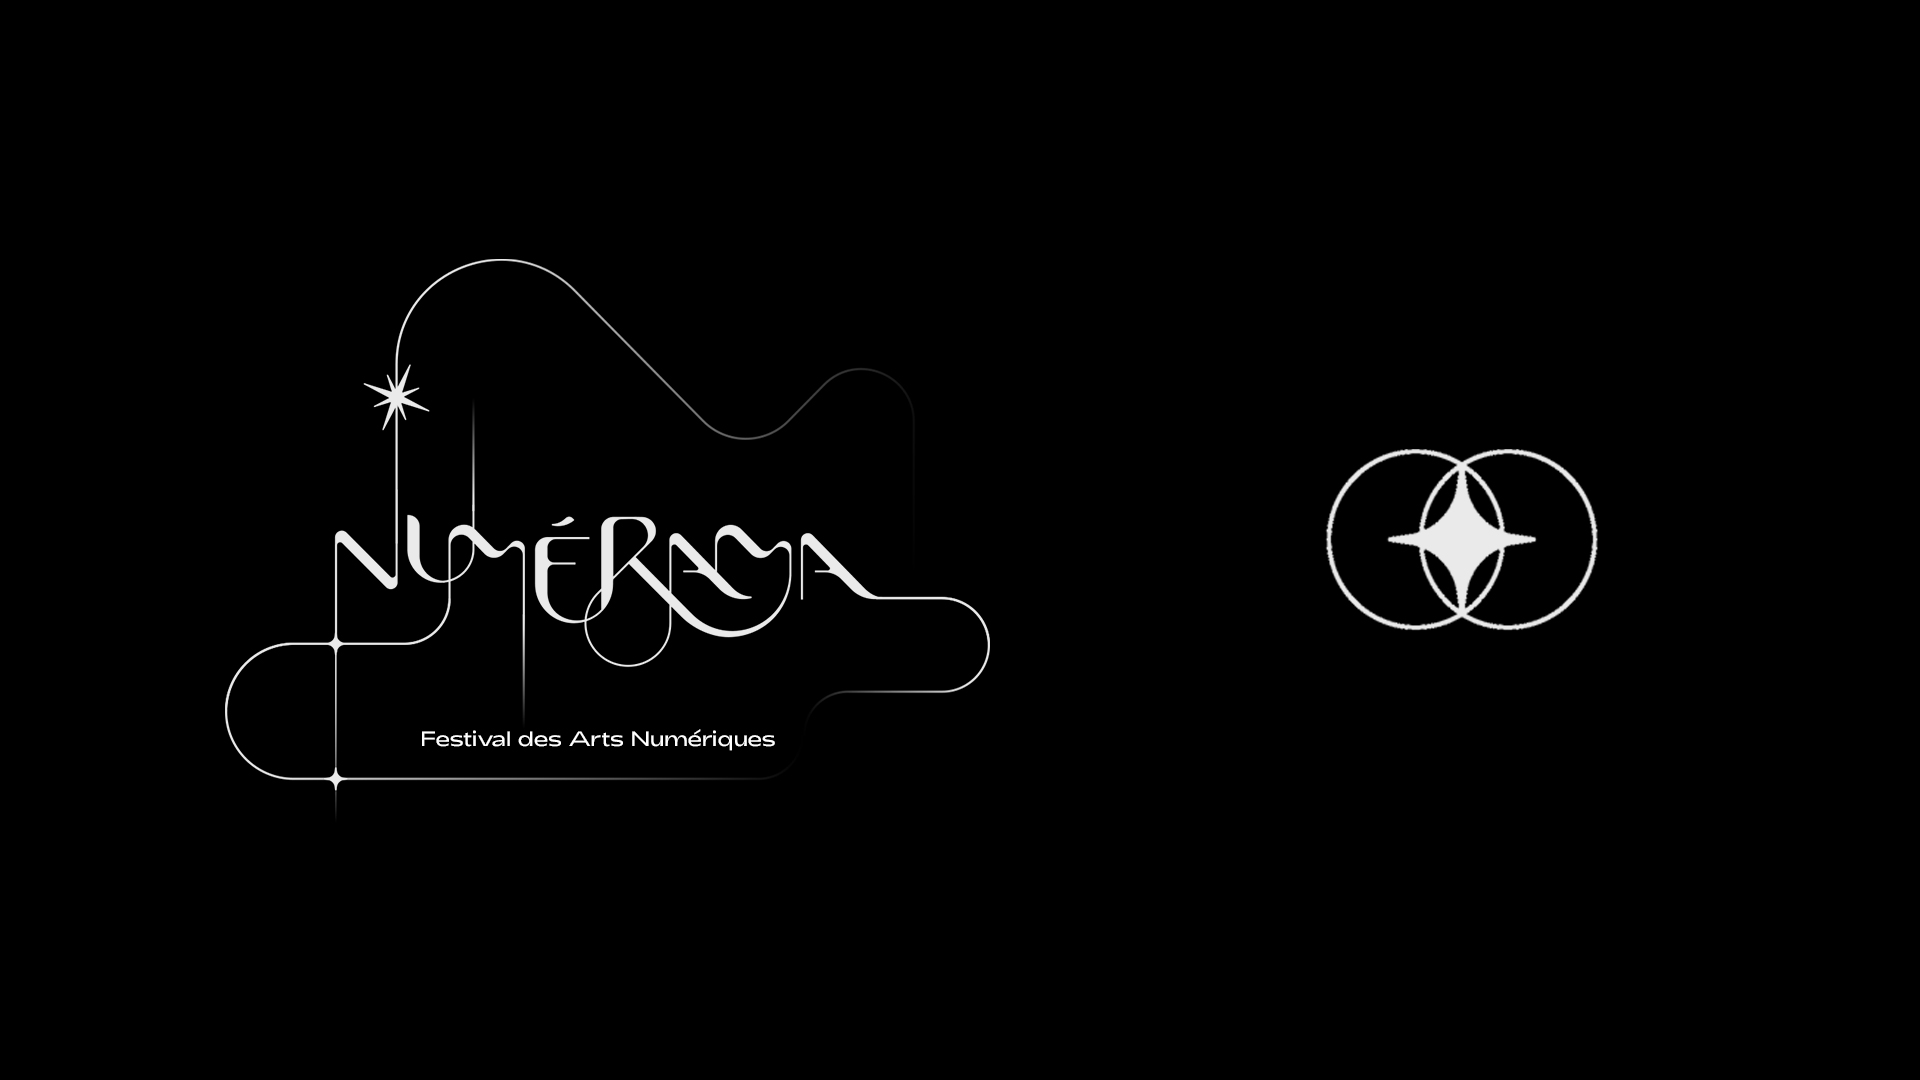 numerama-logo-variasion-type-typedesign-icon-favicon-adrienducrocq-festival-master-project